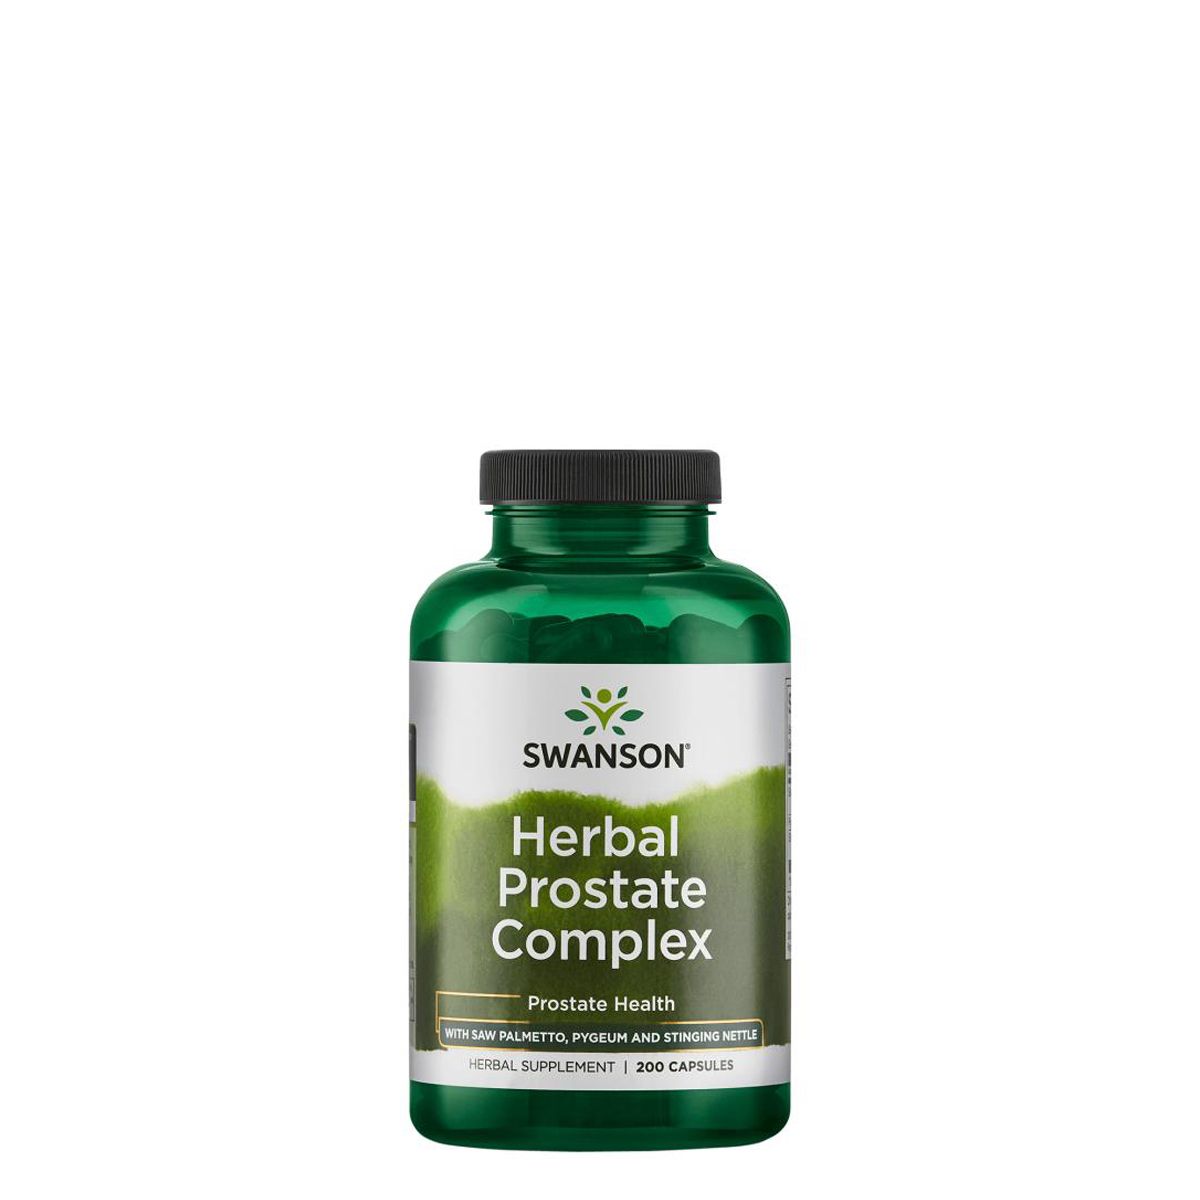 Gyógynövényes prosztata komplex, Swanson Herbal Prostate Complex, 200 kapszula